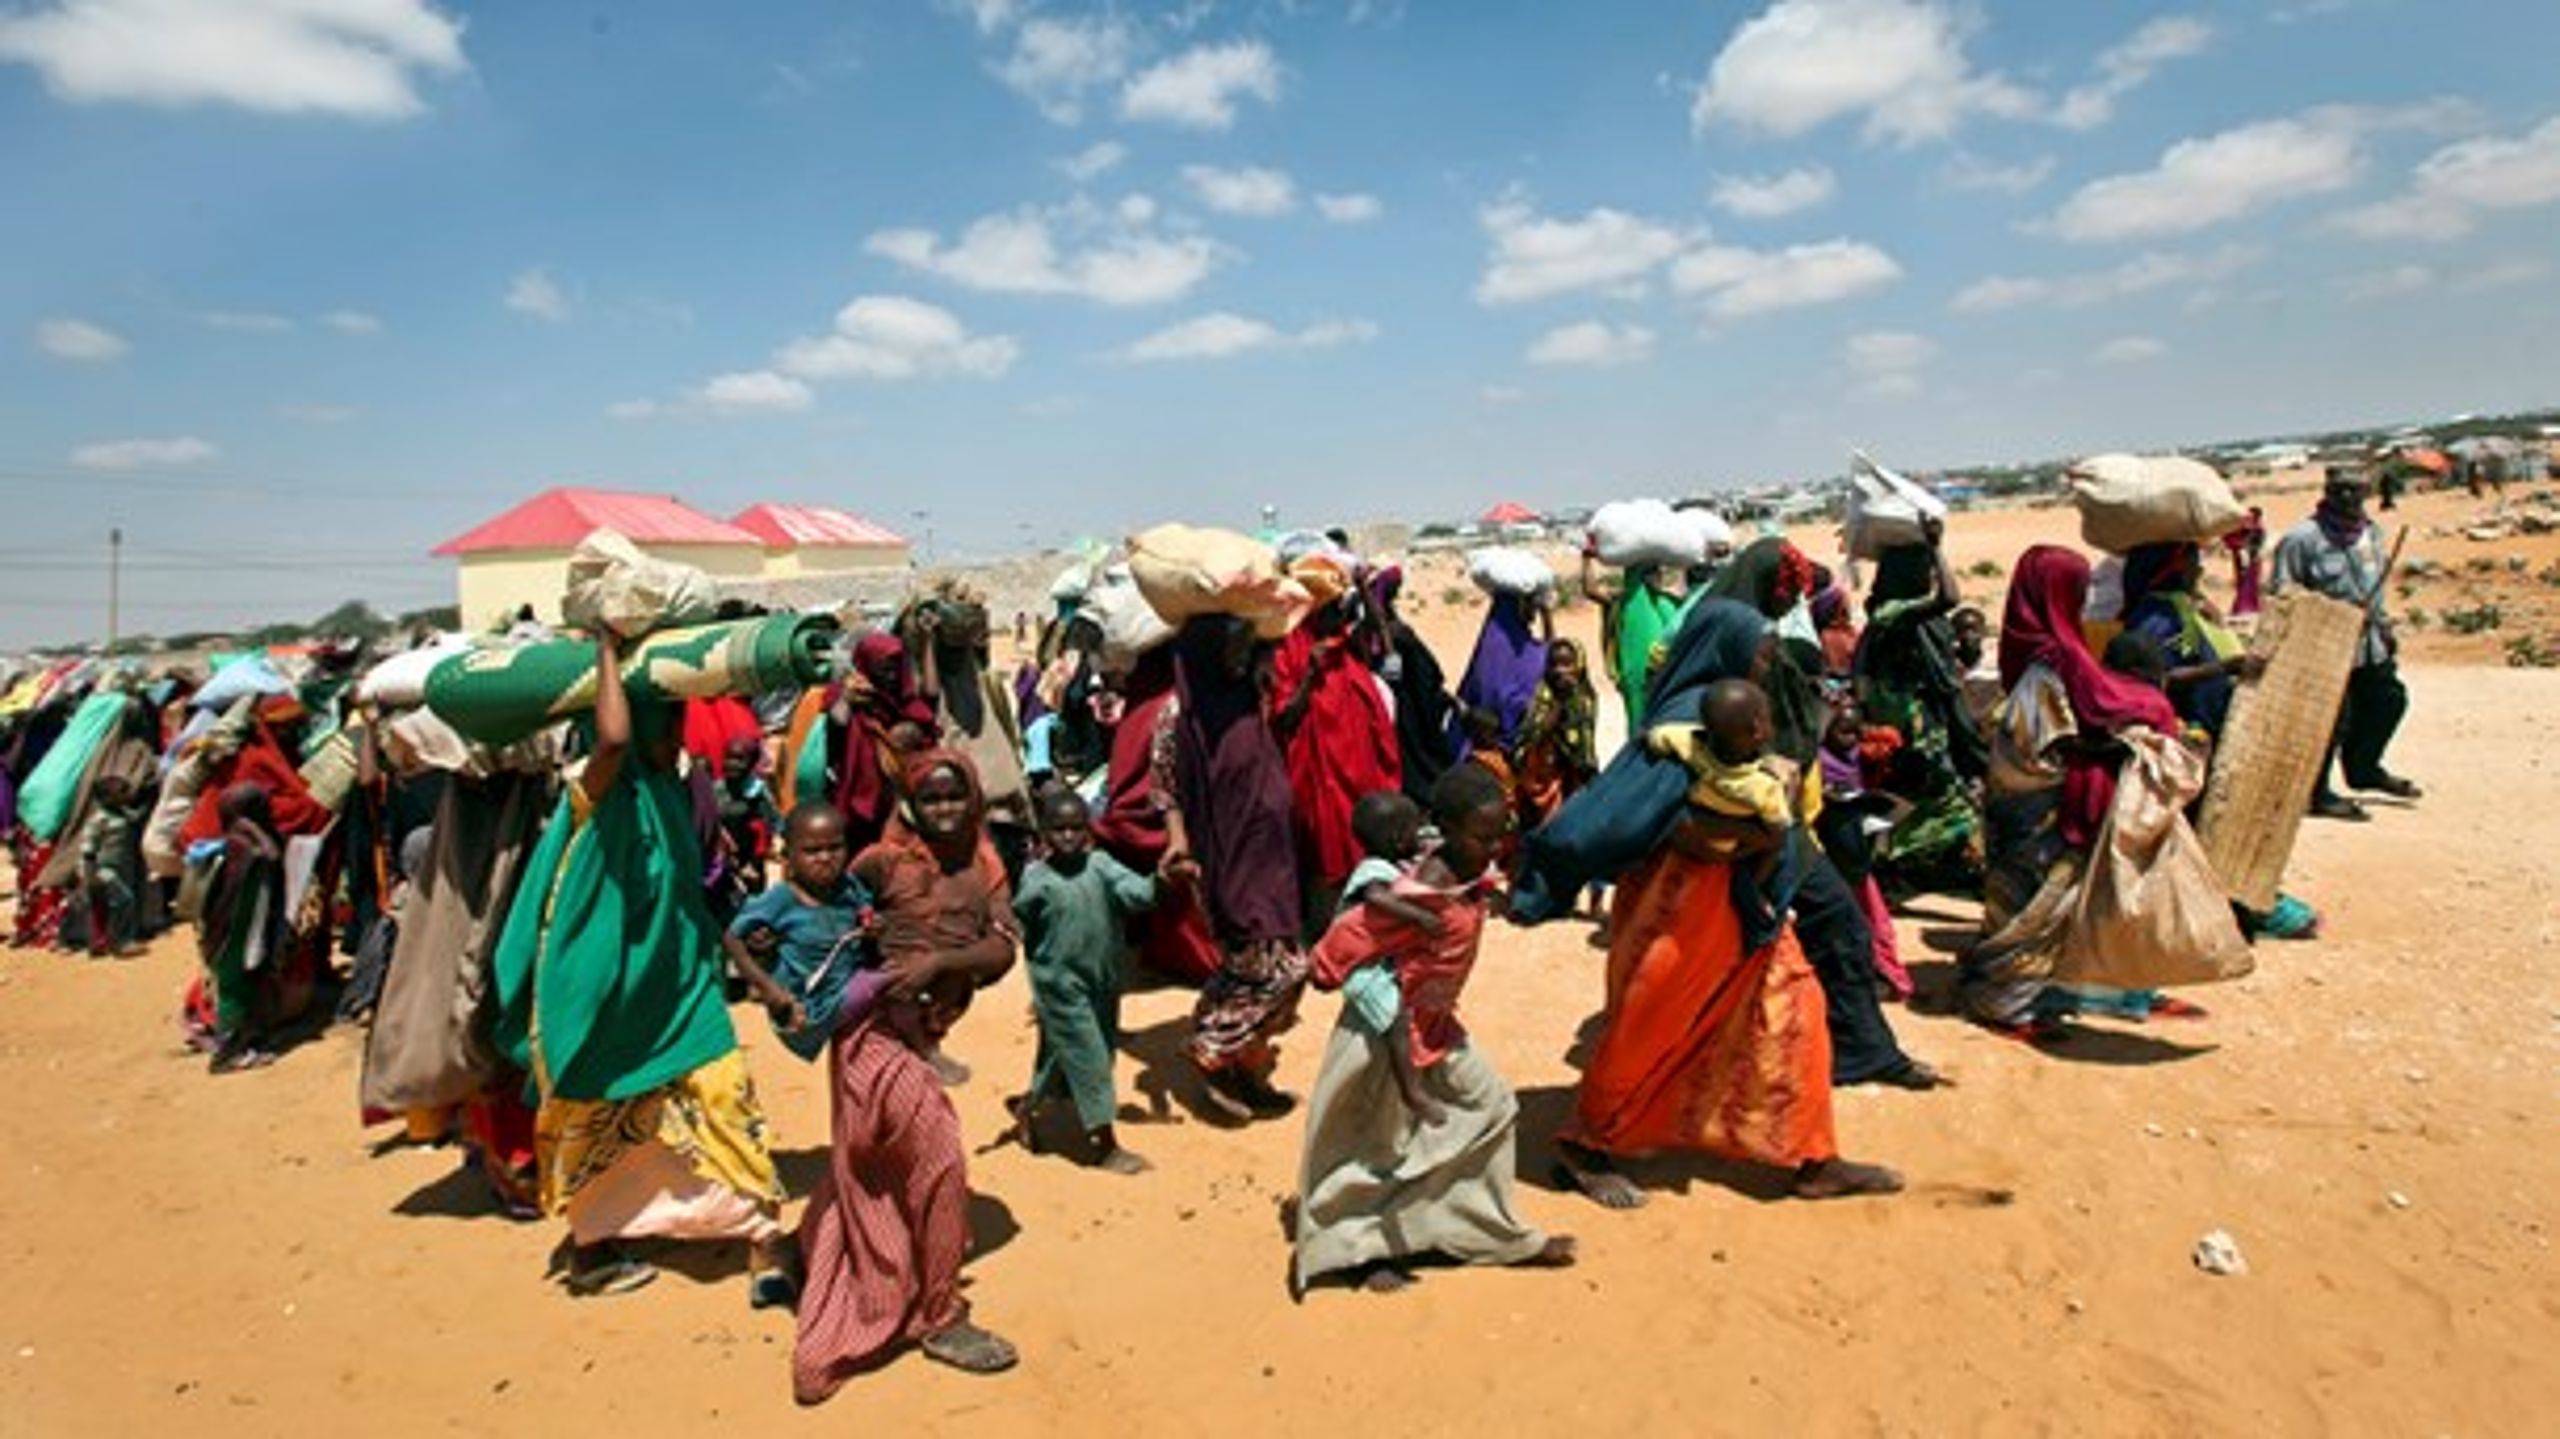 Det unikke i Somalia er ikke, at klimaet forværrer eksisterende konflikter, men det er derimod unikt, at FN's Sikkerhedsråd for første gang nogensinde anerkender den sammenhæng, skriver&nbsp;<span>Mattias Söderberg og Pernille Westphall.<br></span>